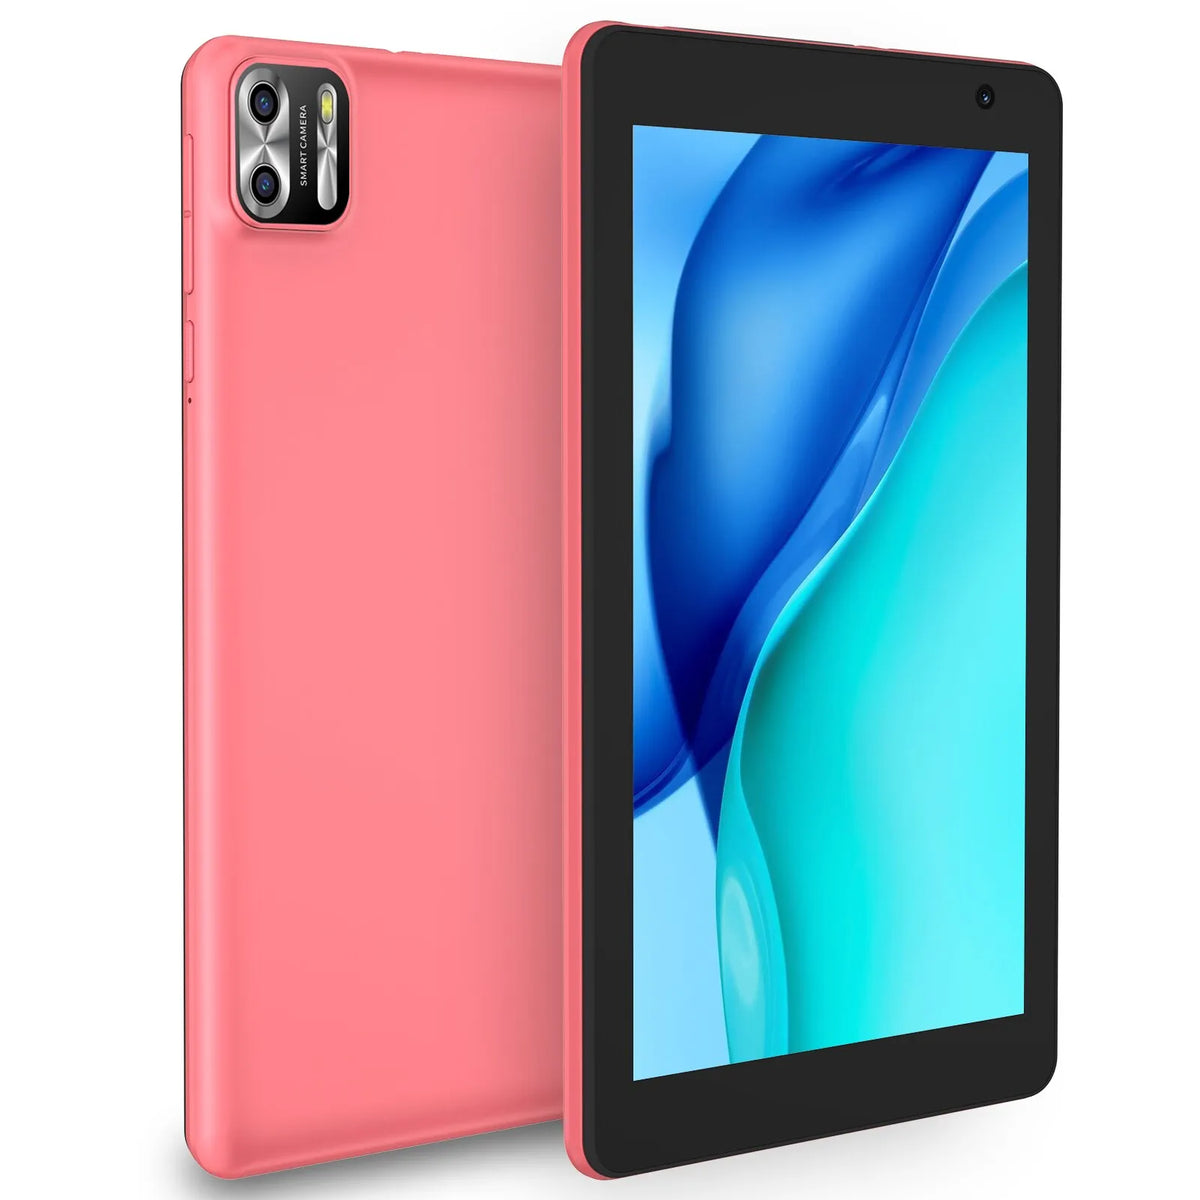 Tablet Android 13 PRITOM 8", 8GB(4+4 Expand) 64GB,1TB Expand, Tela IPS 1280x800, com câmera dupla, 5000mAh Bateria, Wi-Fi